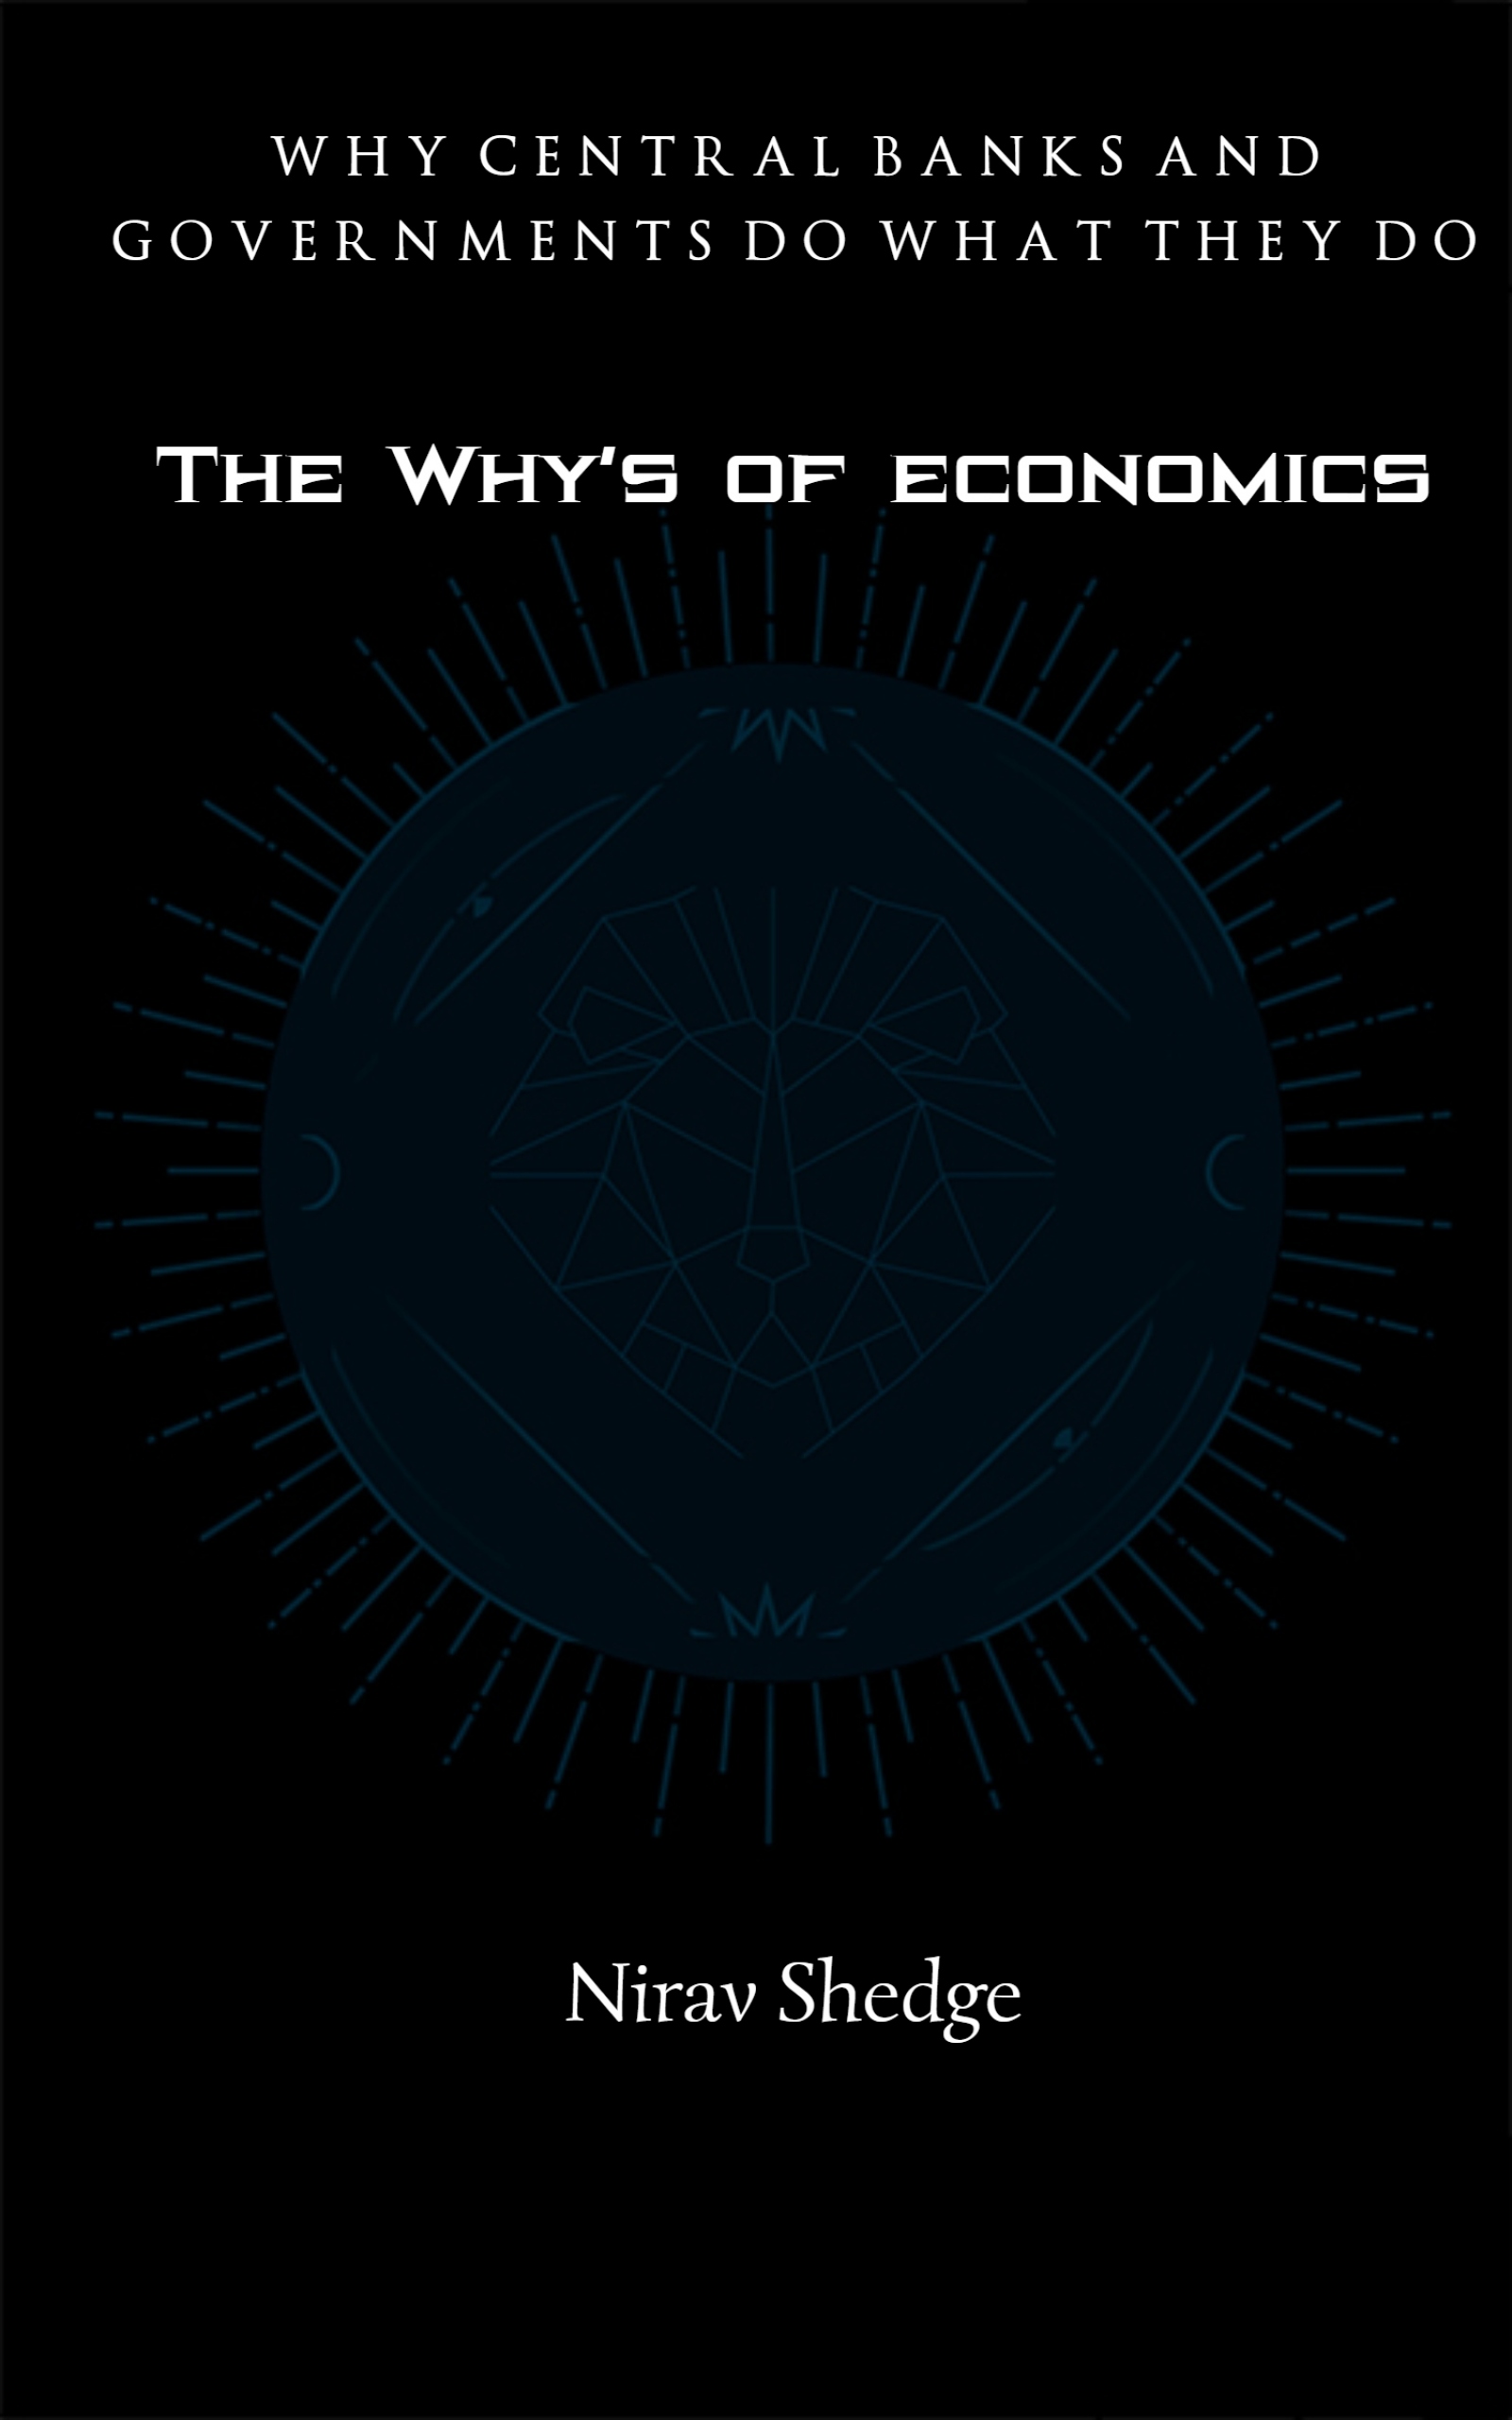 The Why’s of economics